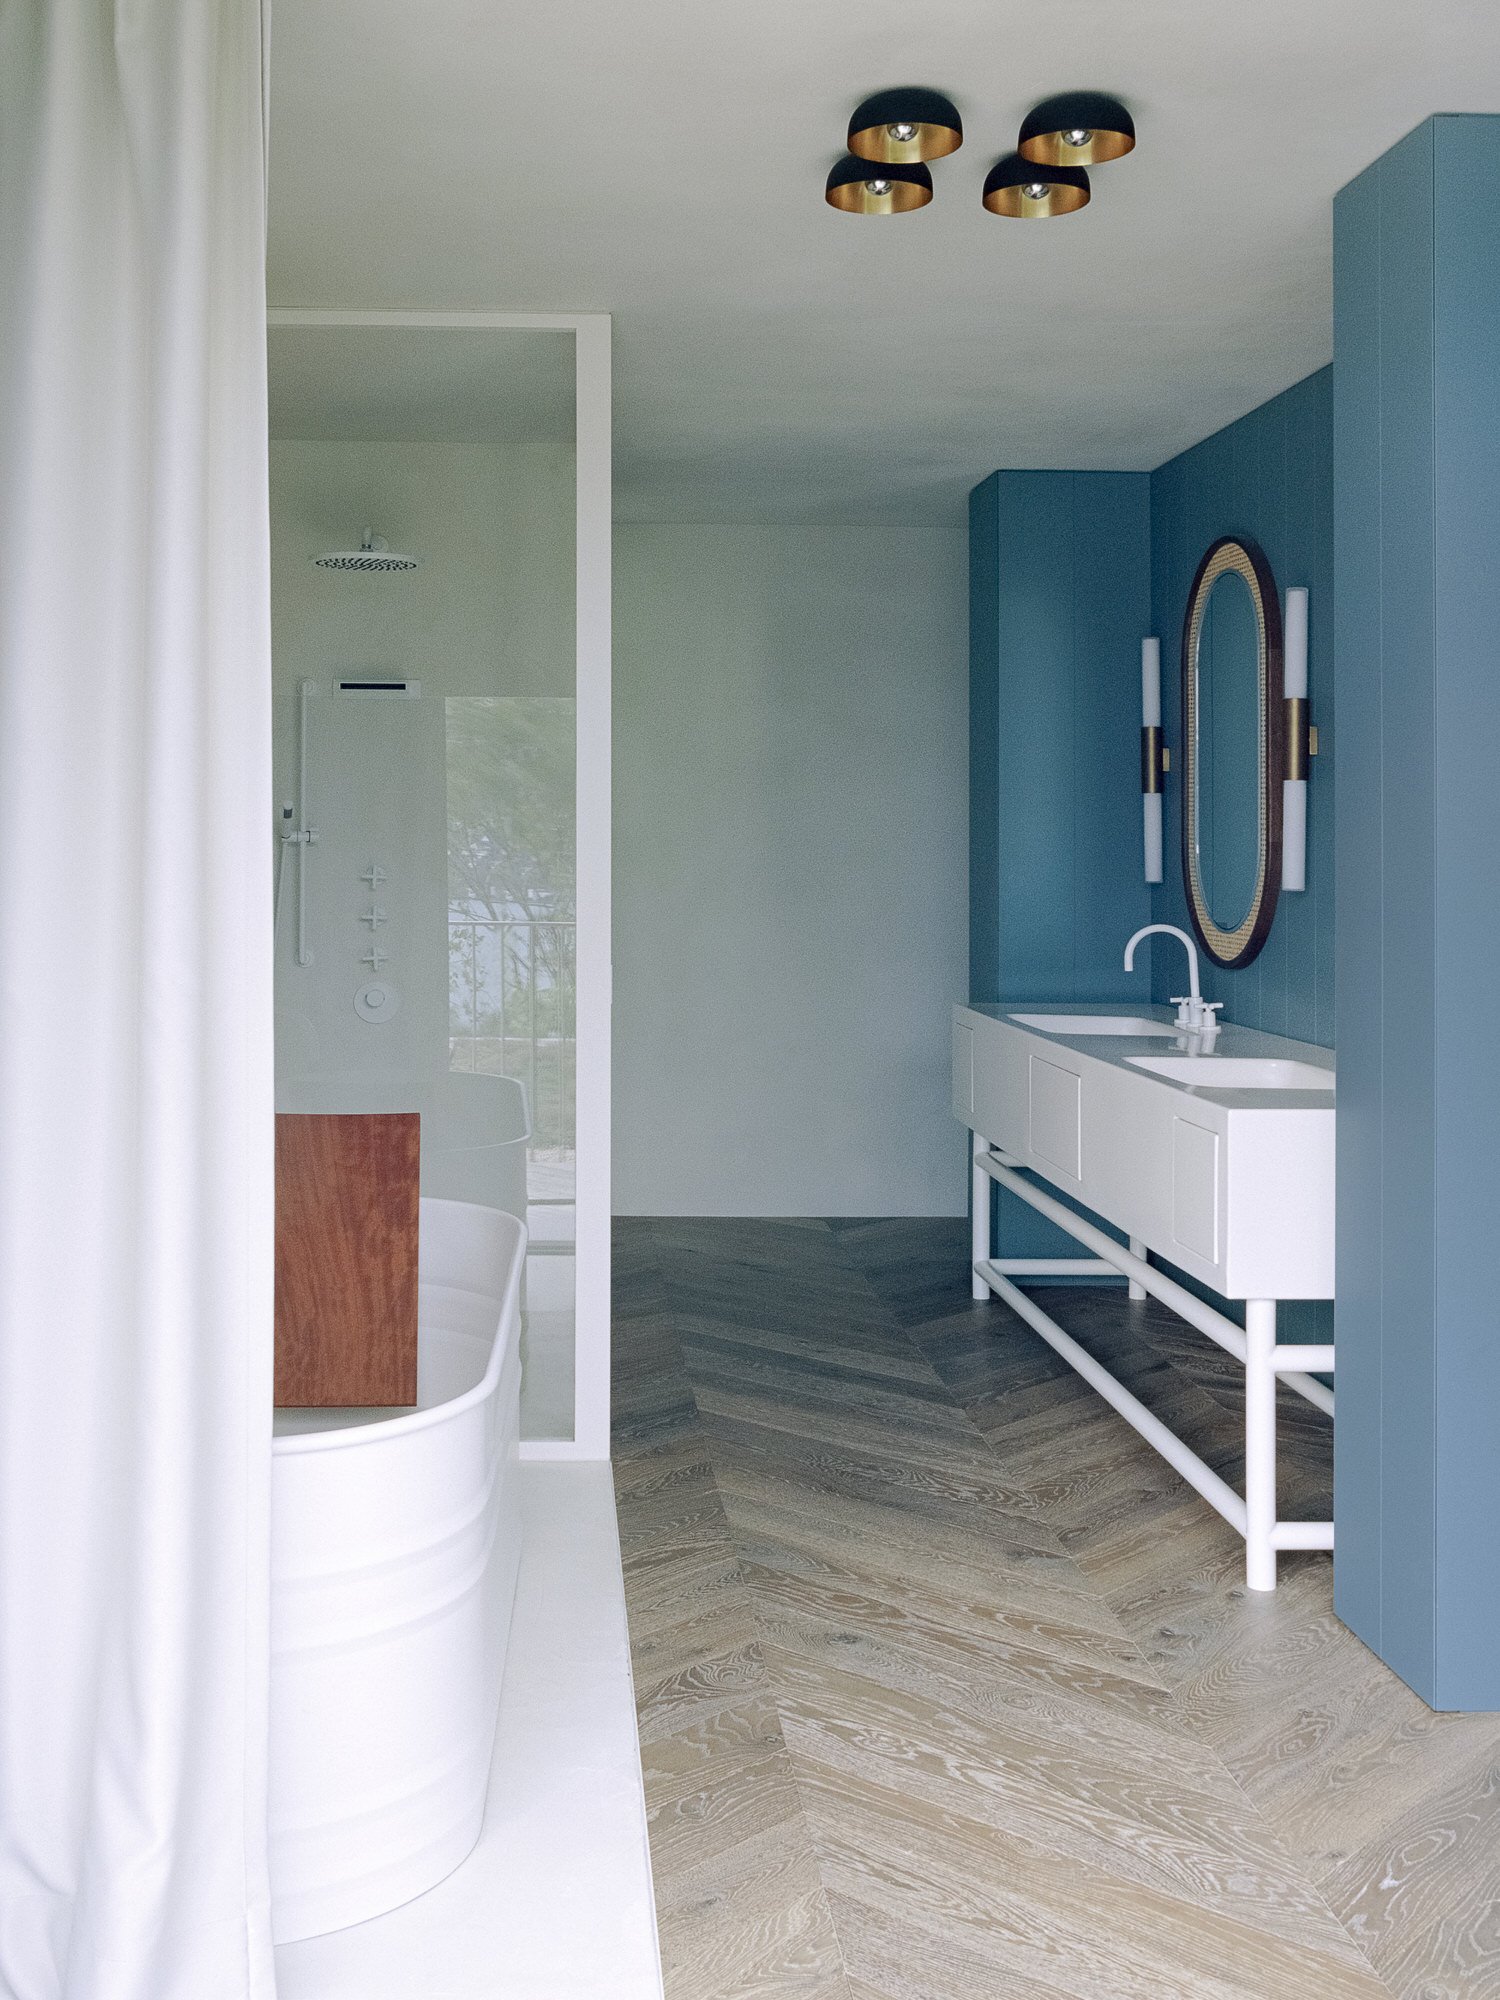 Baño con muebles de color blanco y pared de color azul de una casa en el lago de zurich